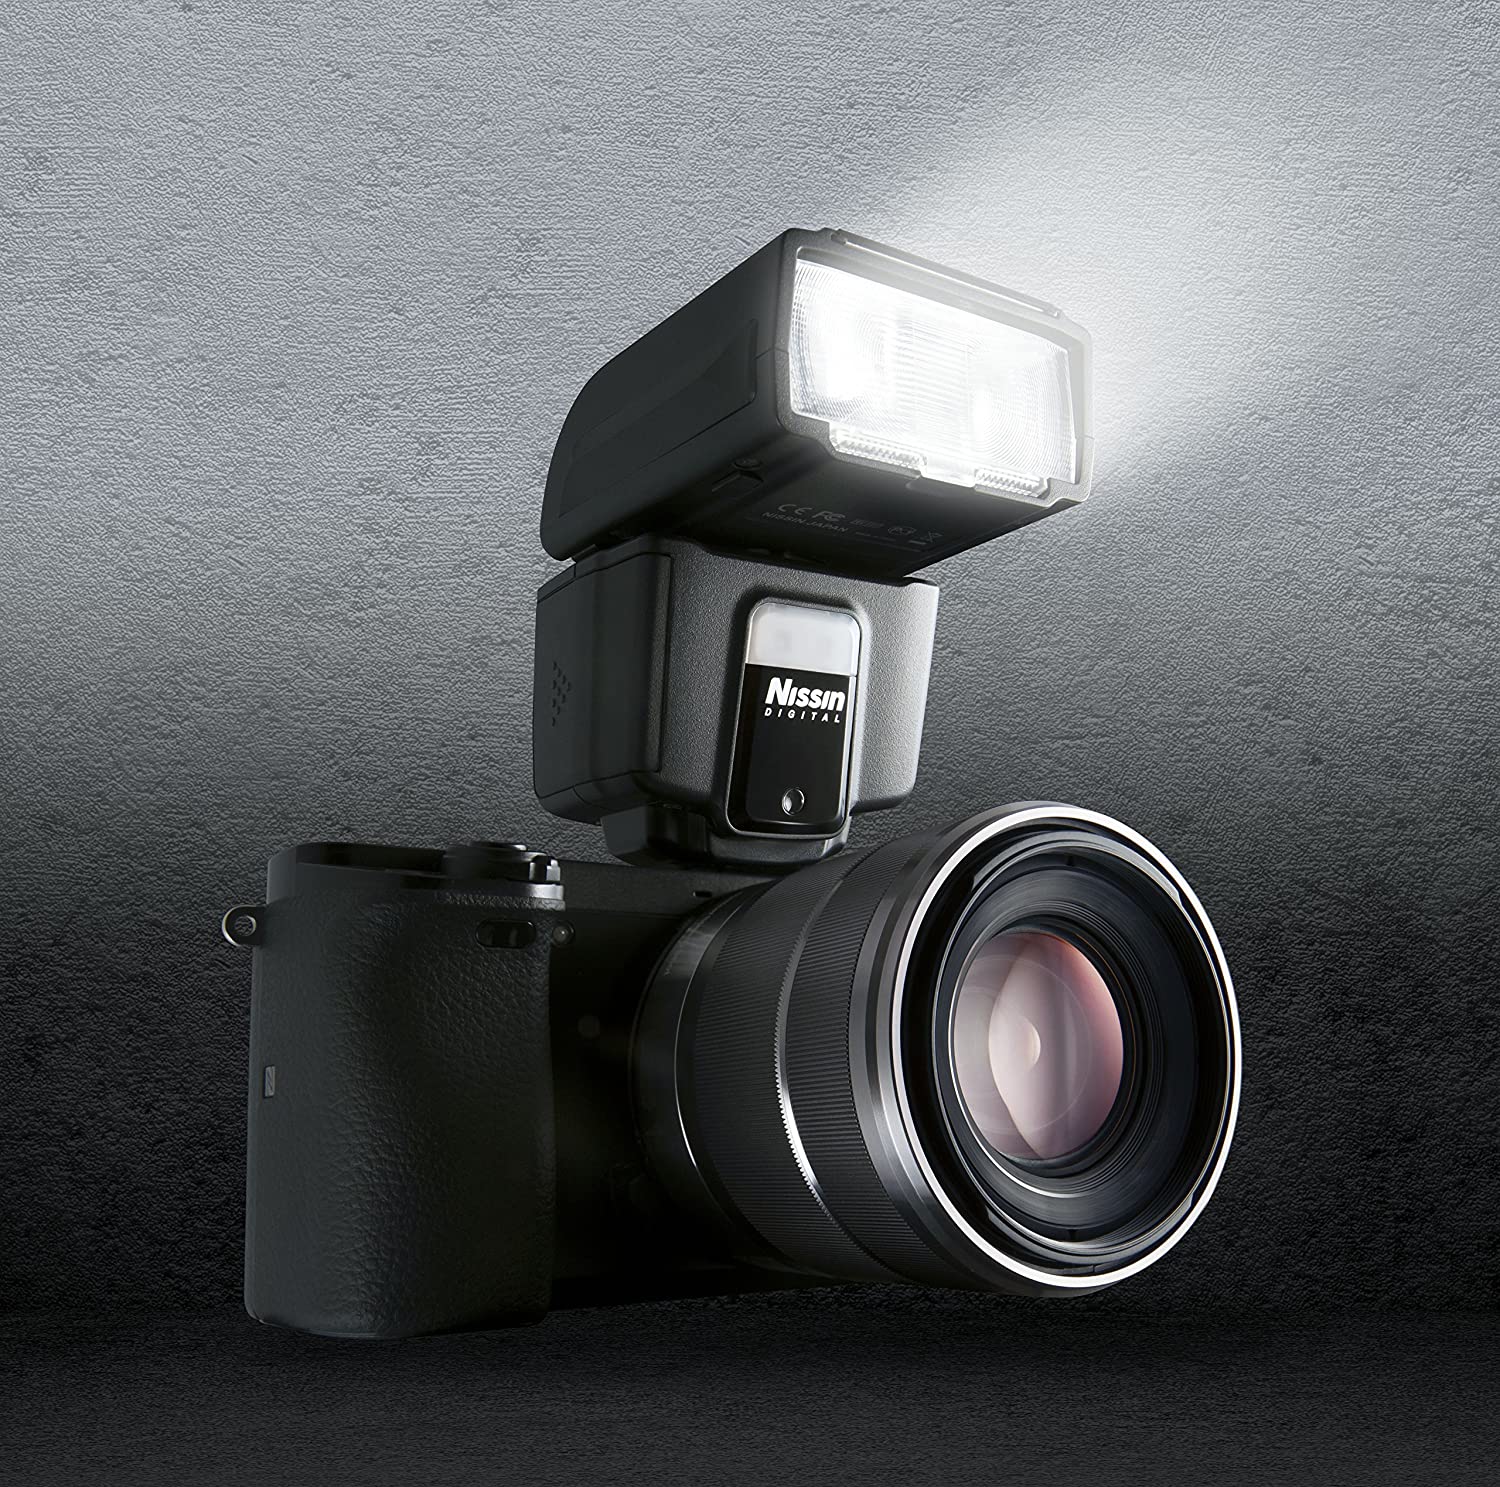 فلاش دوربین سونی Nissin مدل NI-HI40S - ارسال ۱۰ الی ۱۵ روز کاری